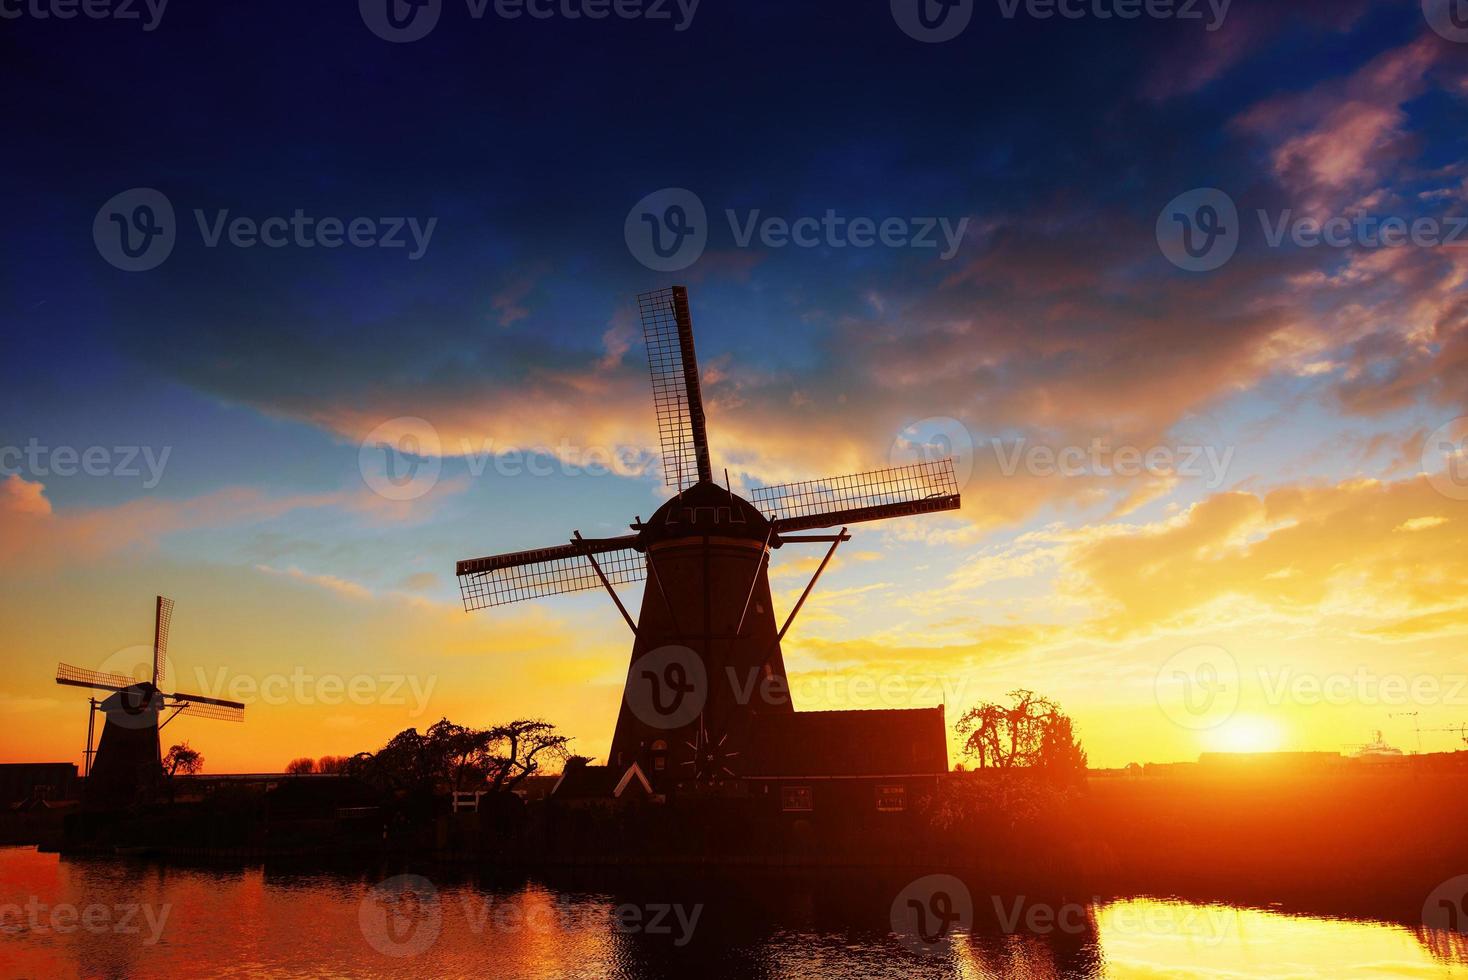 landskap med vacker traditionell holländsk kvarn nära vattendrag med fantastisk solnedgång och reflektion i vatten. nederländerna. foto